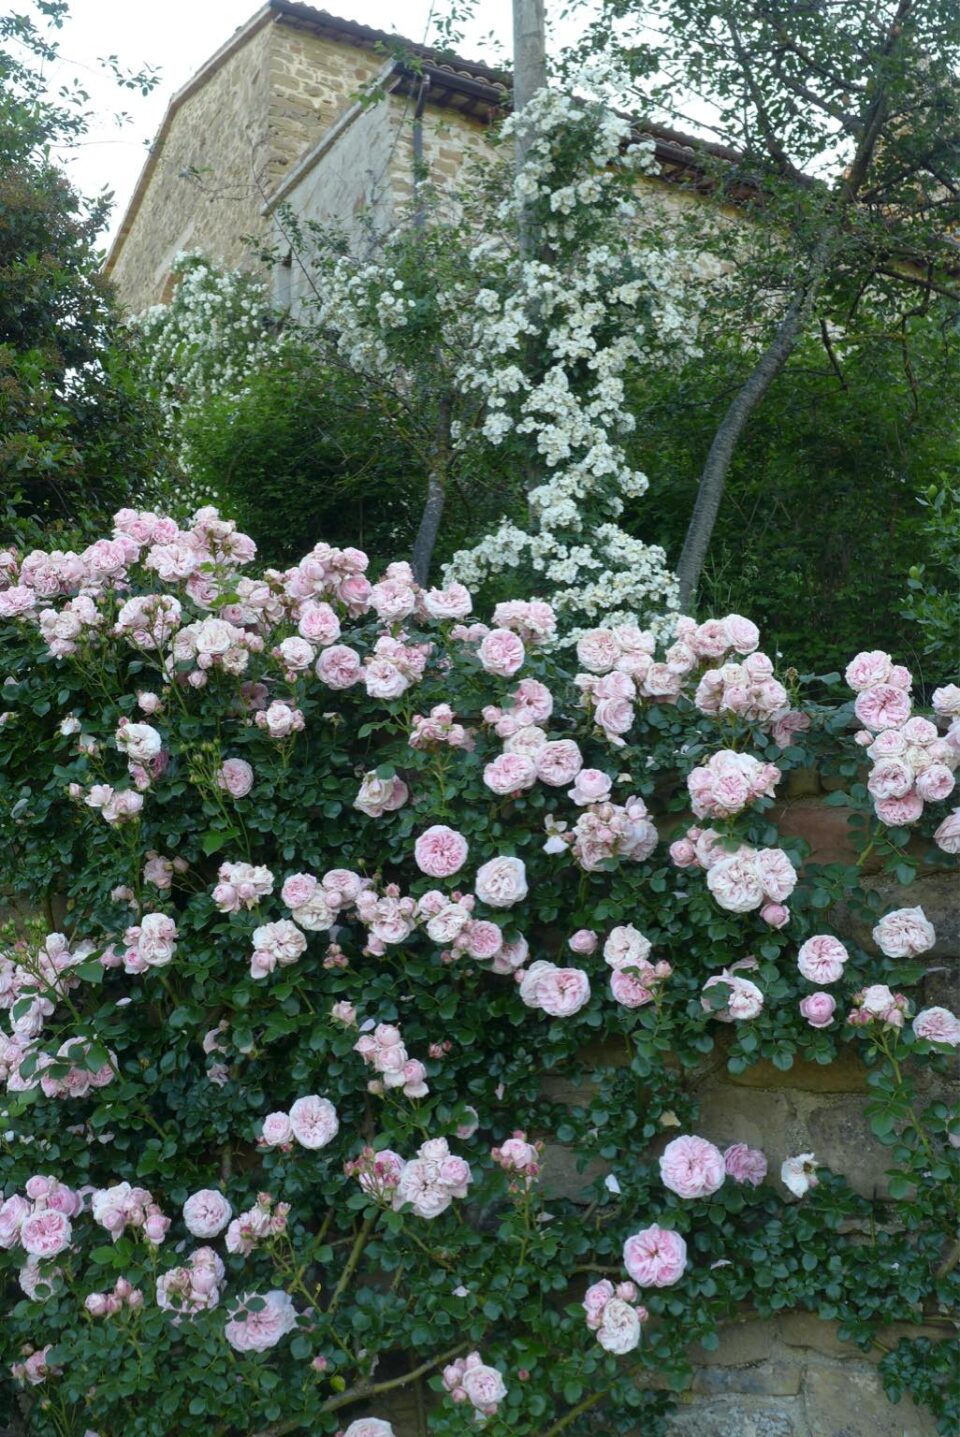 La rosa "Giardina"